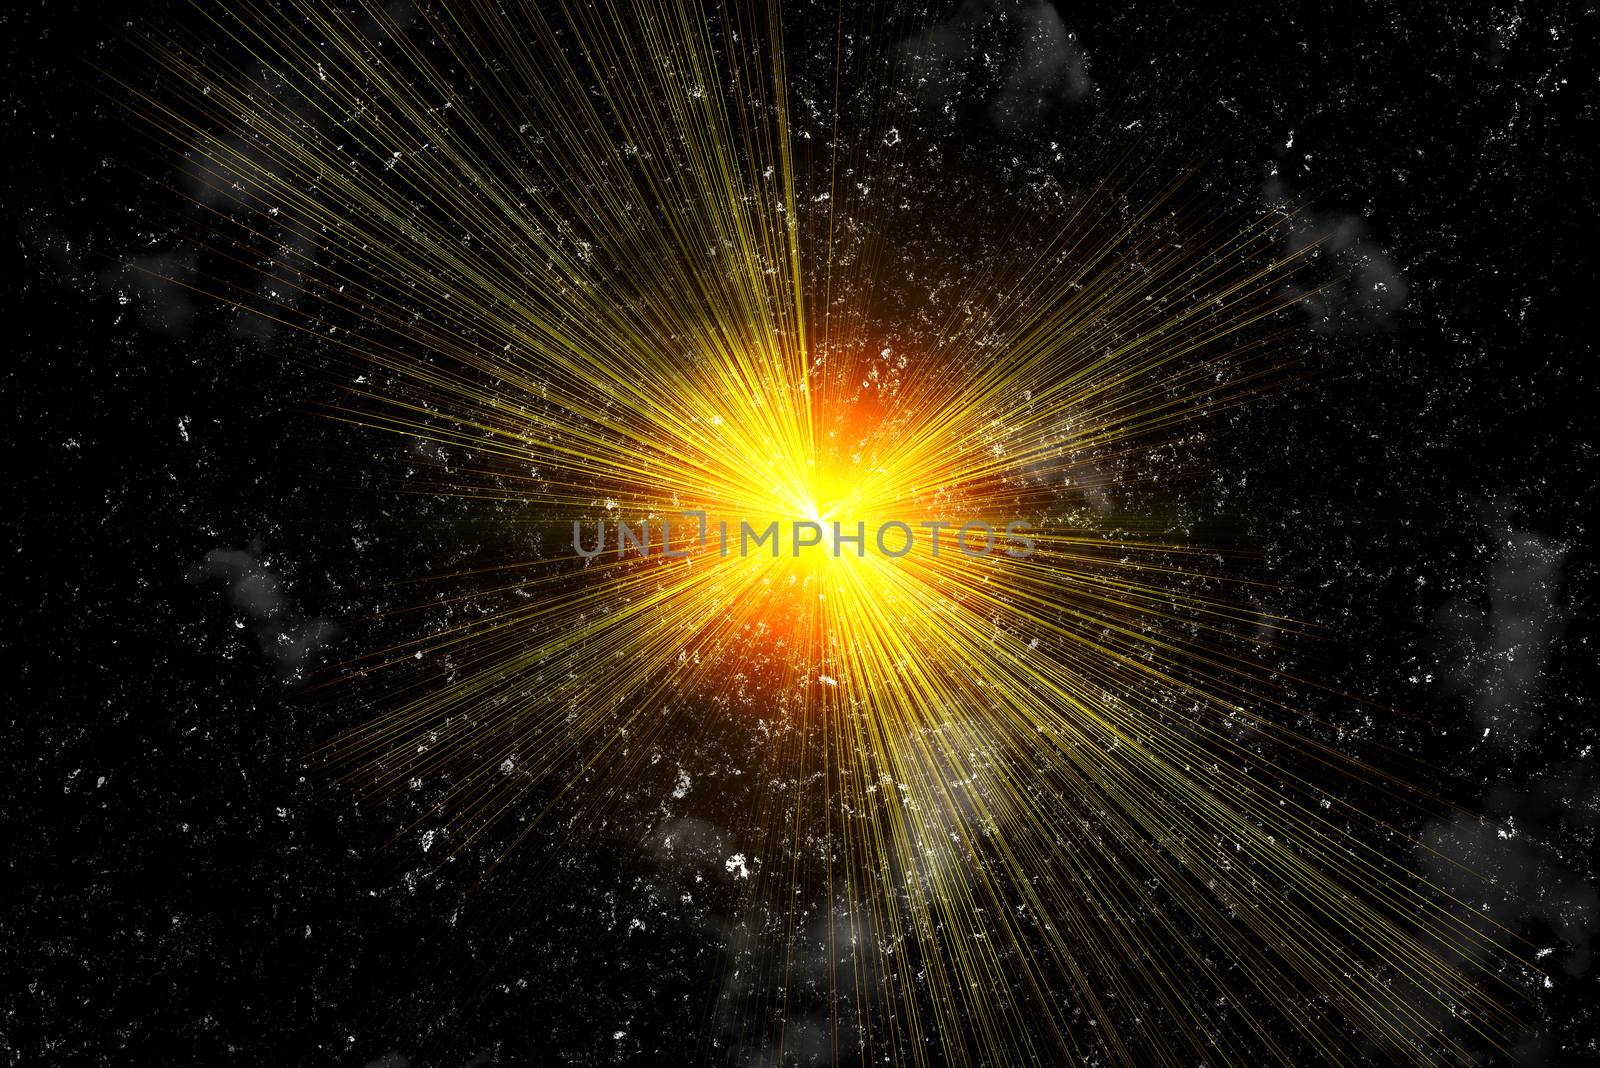 Star blast on black background. Big bang illustration